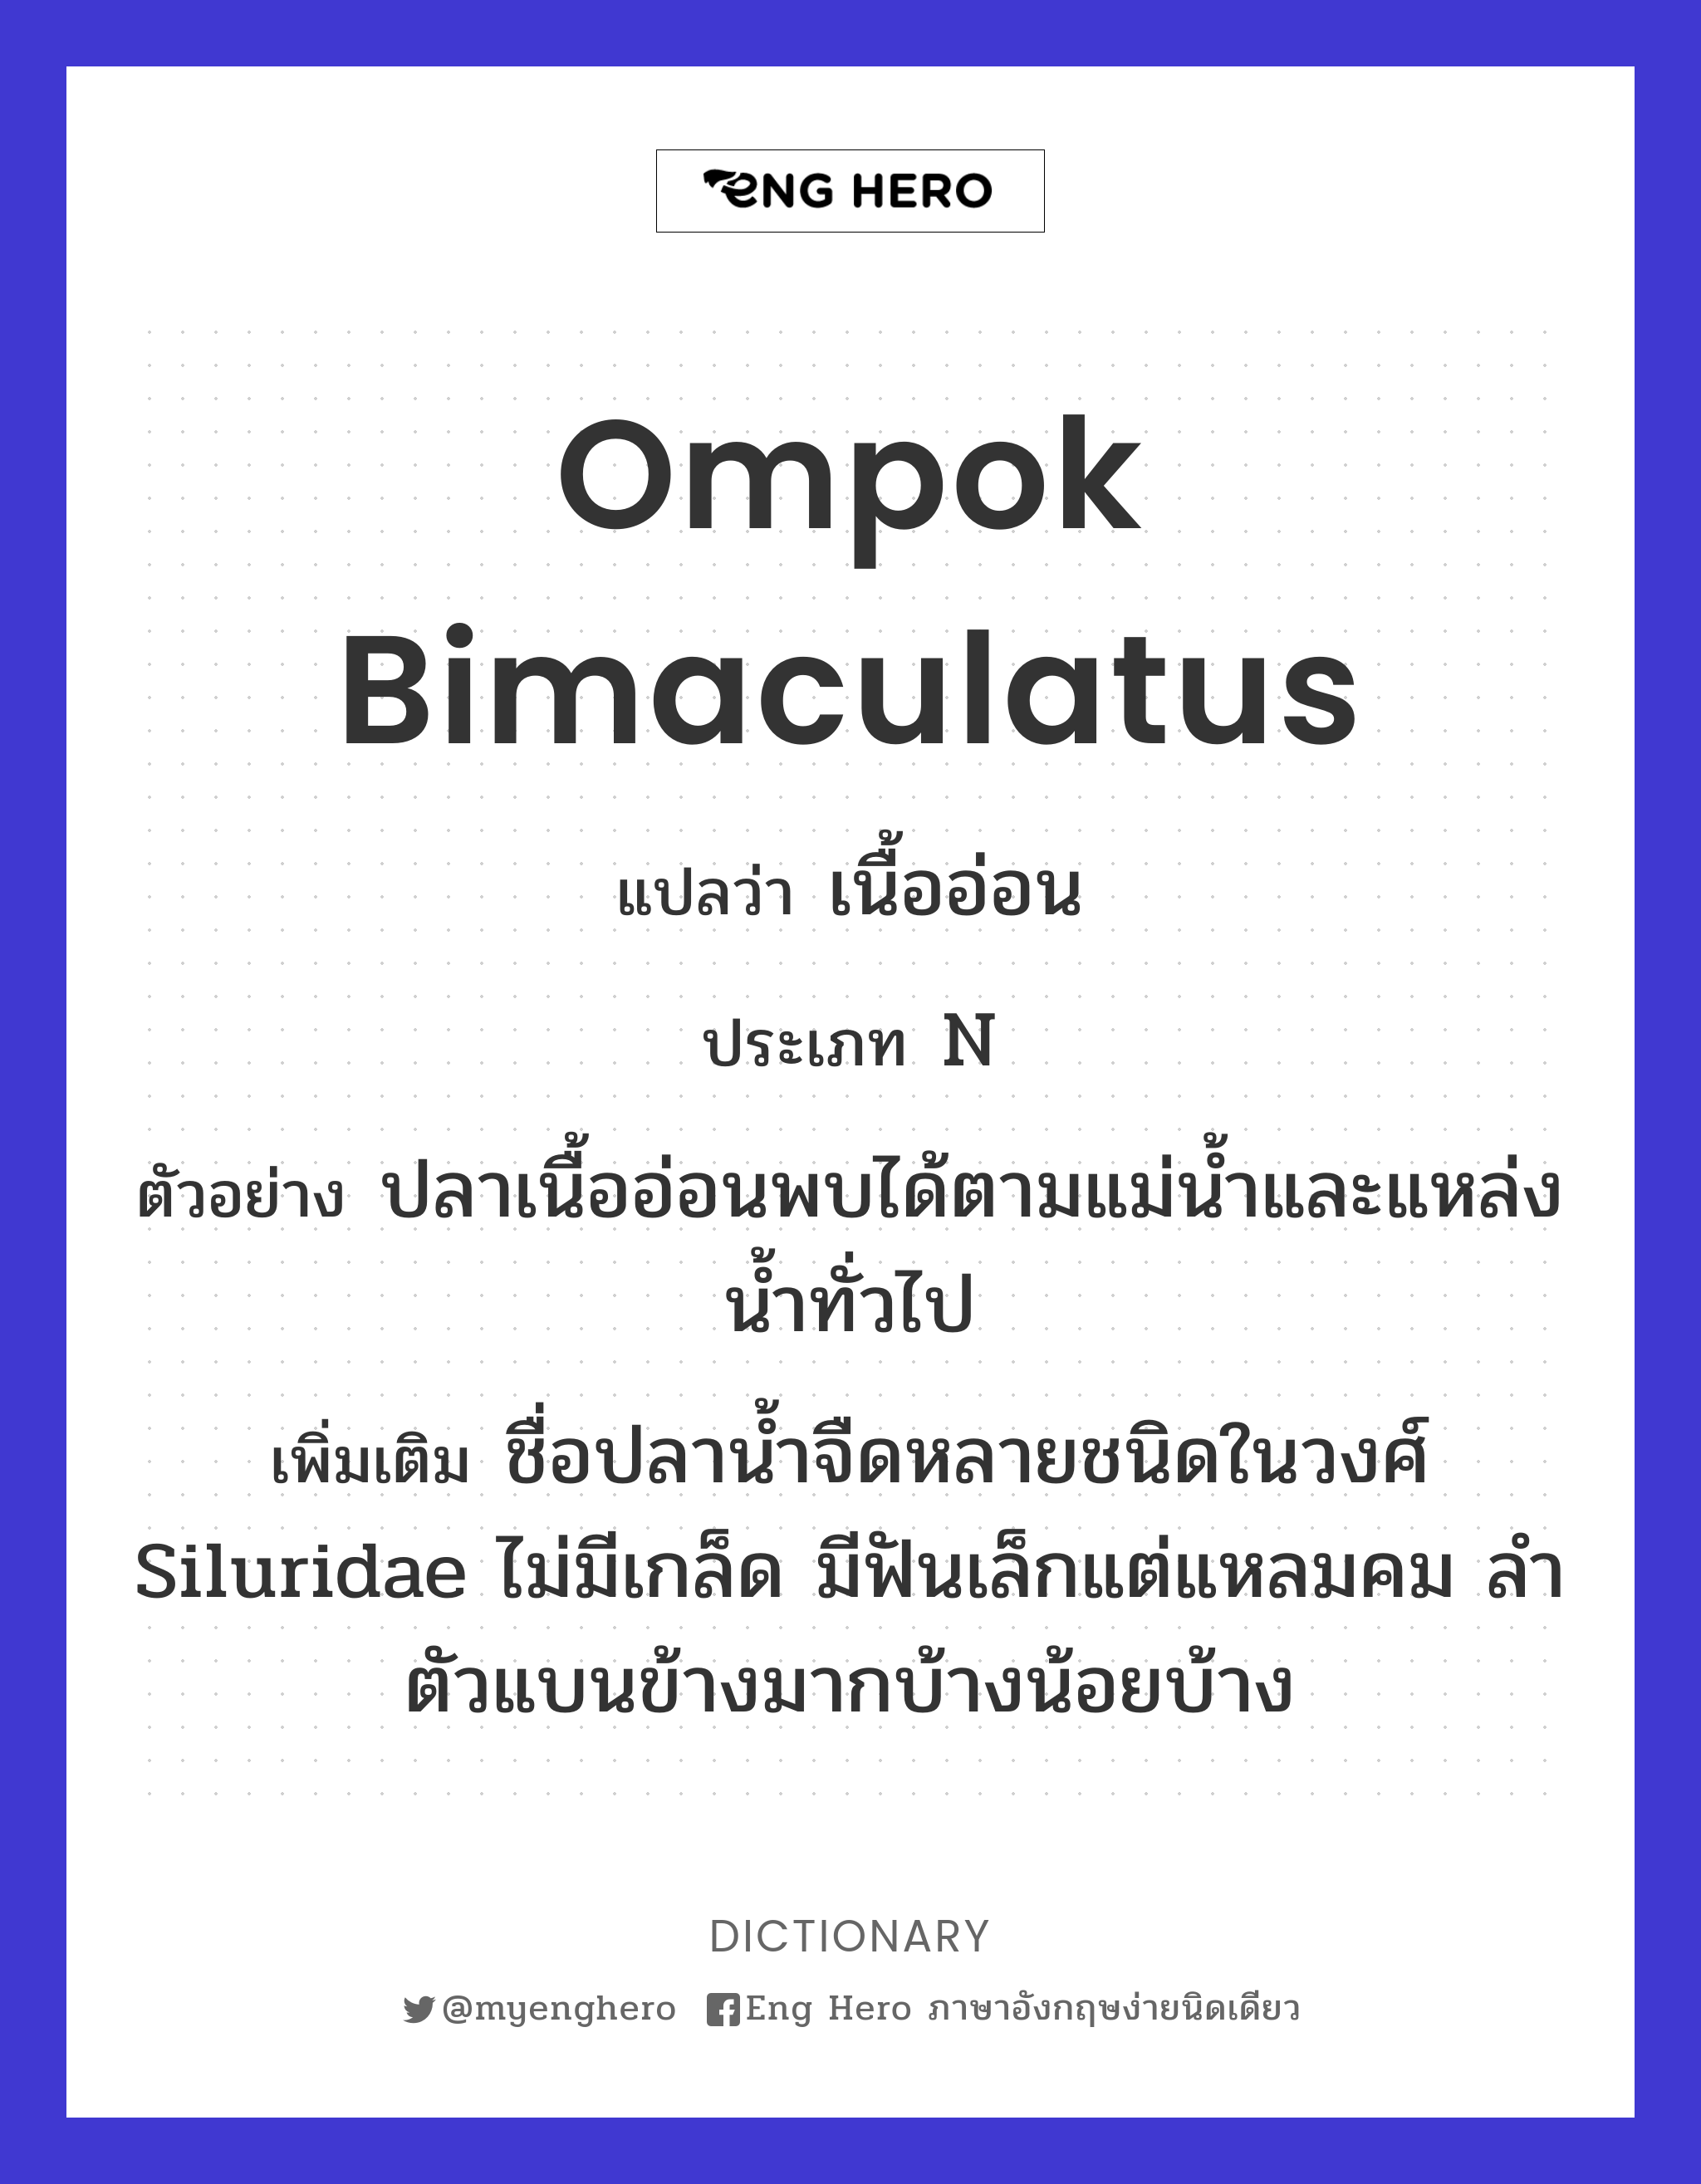 Ompok bimaculatus